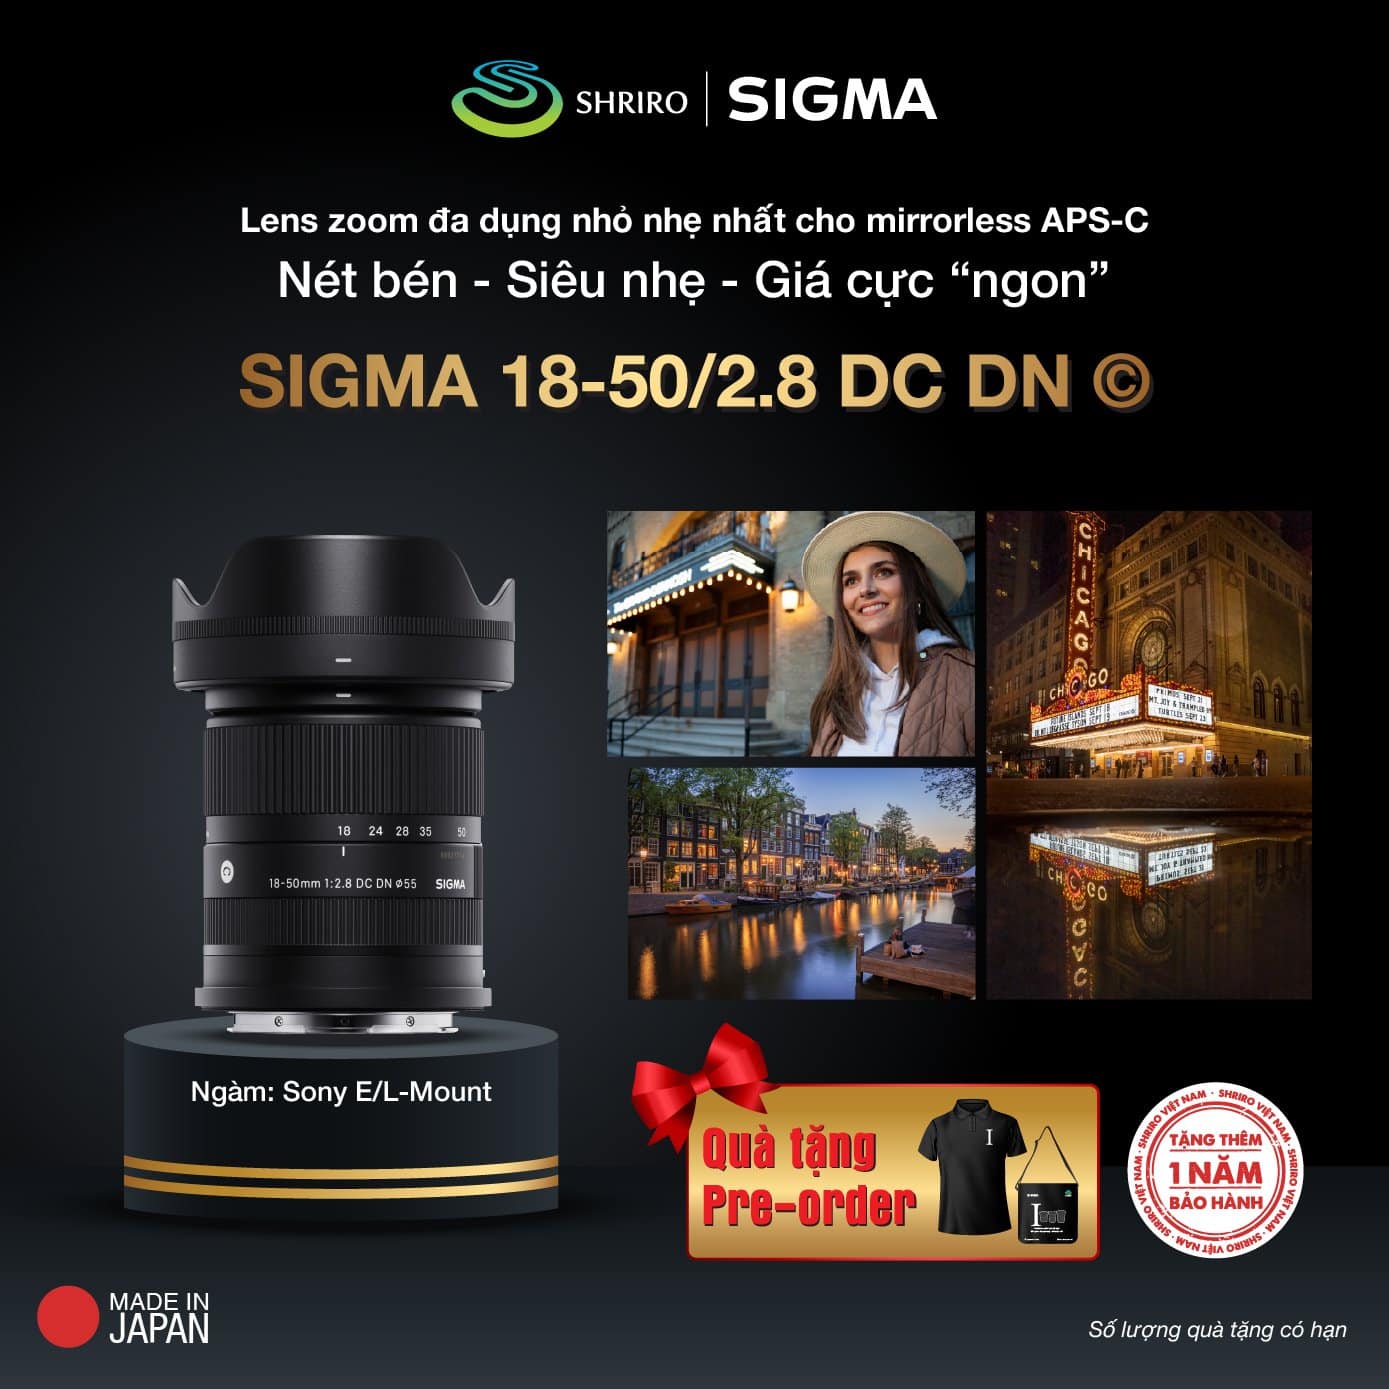 Đặt trước Sigma 18-50mm F2.8 DC DN (C) tại WinWinStore, giá 11.990.000đ